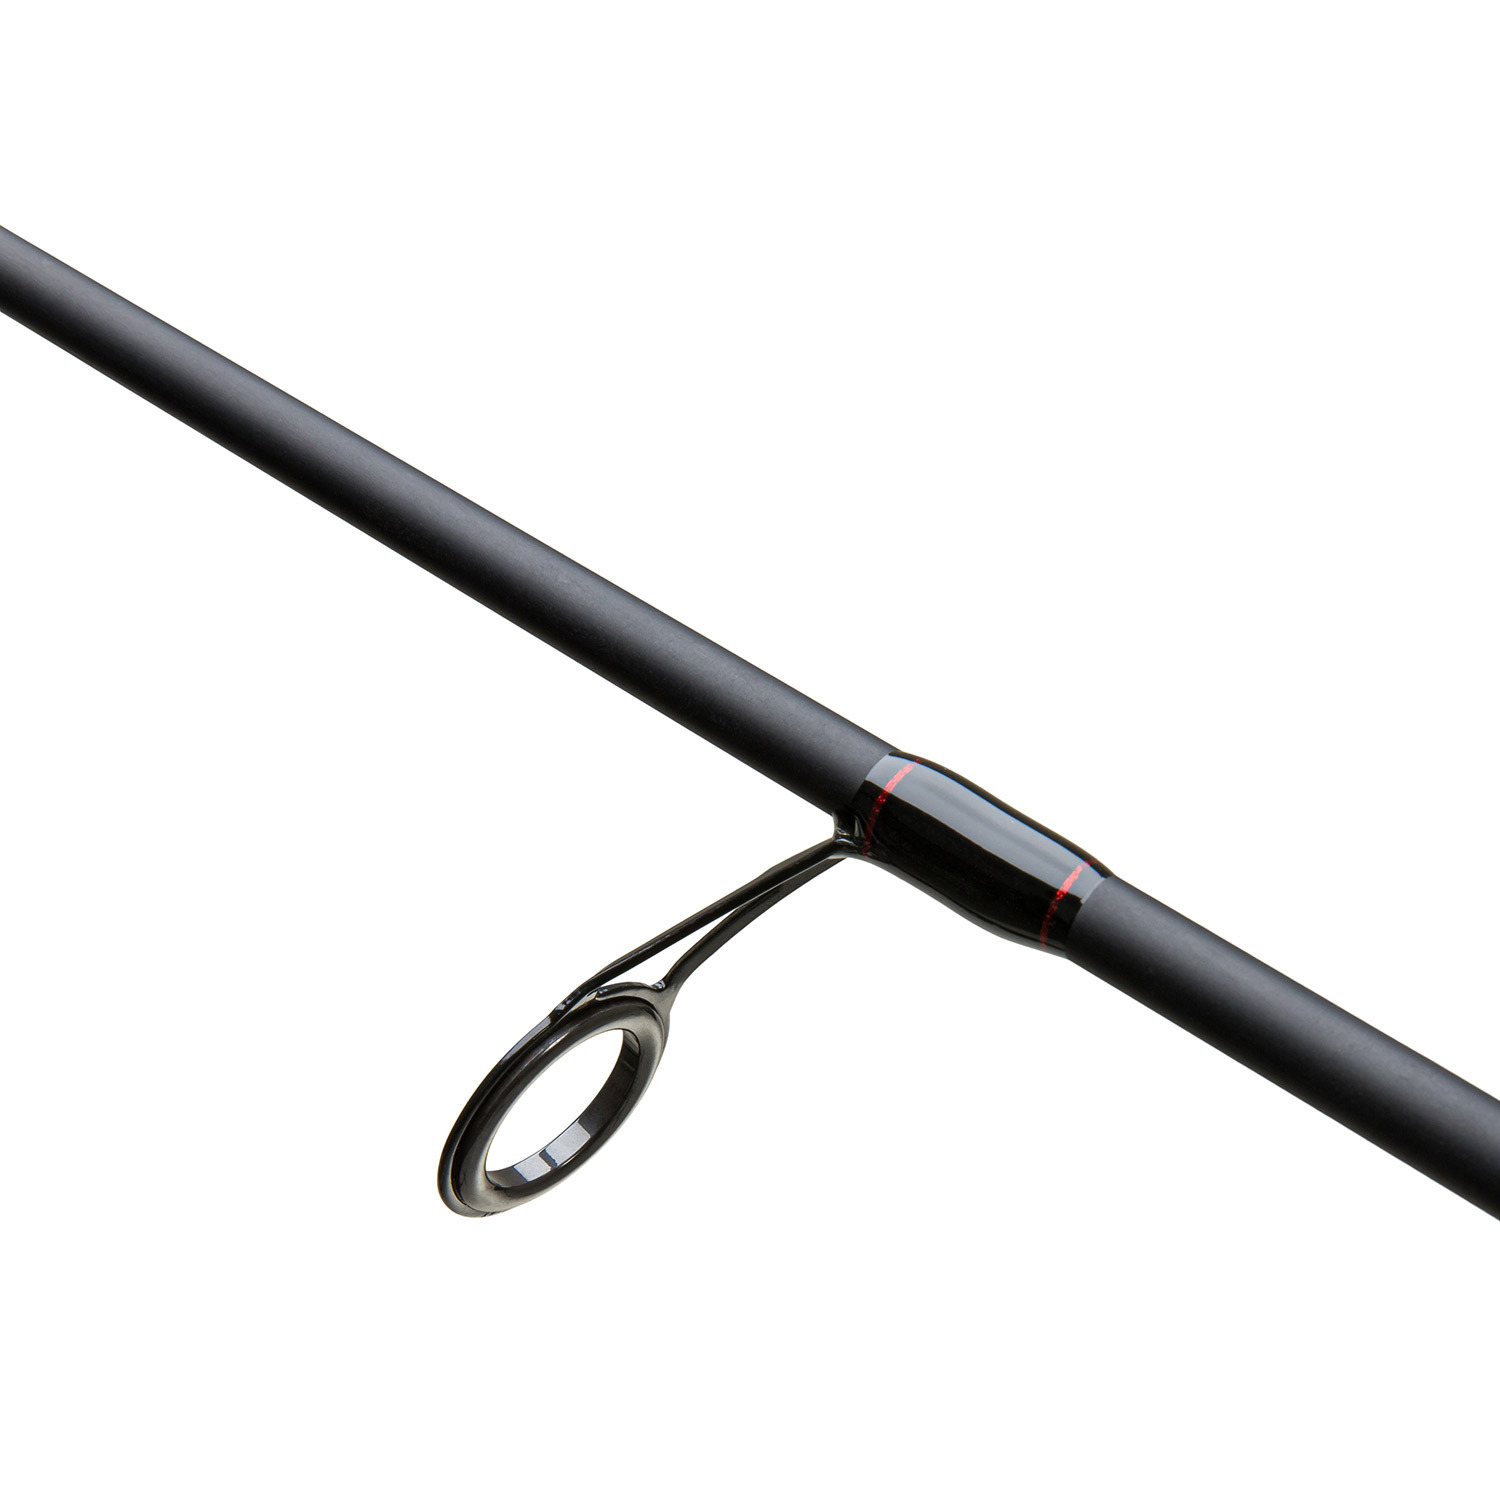 6'6 Scimitar 2-Piece Spinning Rod, Medium Light Power